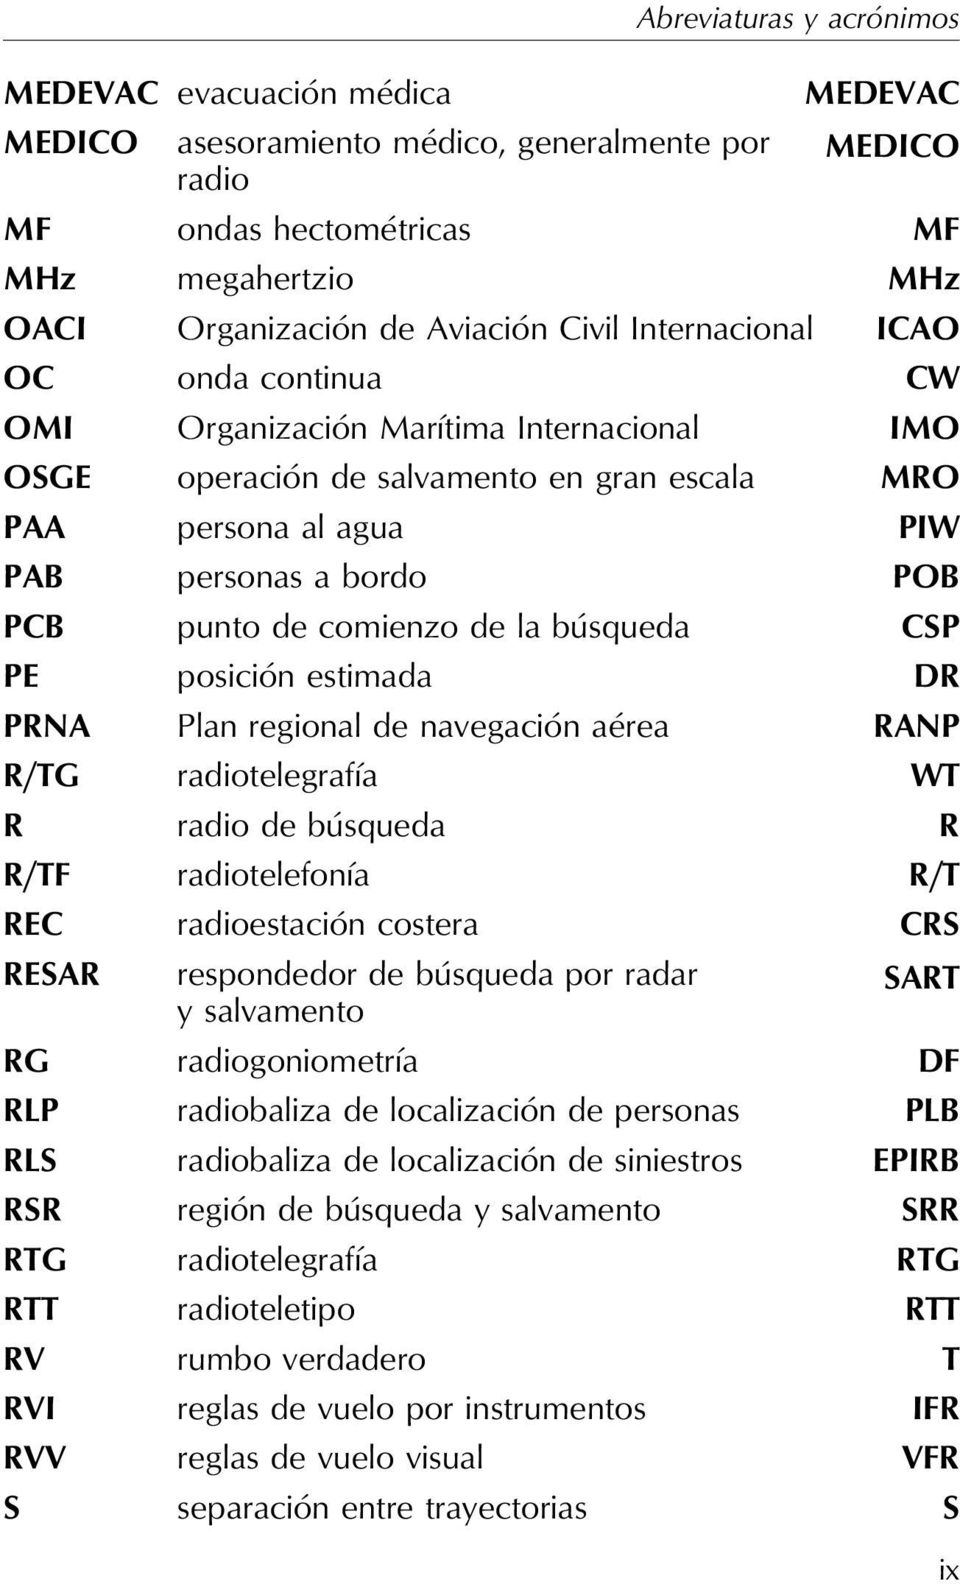 comienzo de la búsqueda CSP PE posición estimada DR PRNA Plan regional de navegación aérea RANP R/TG radiotelegrafía WT R radio de búsqueda R R/TF radiotelefonía R/T REC radioestación costera CRS